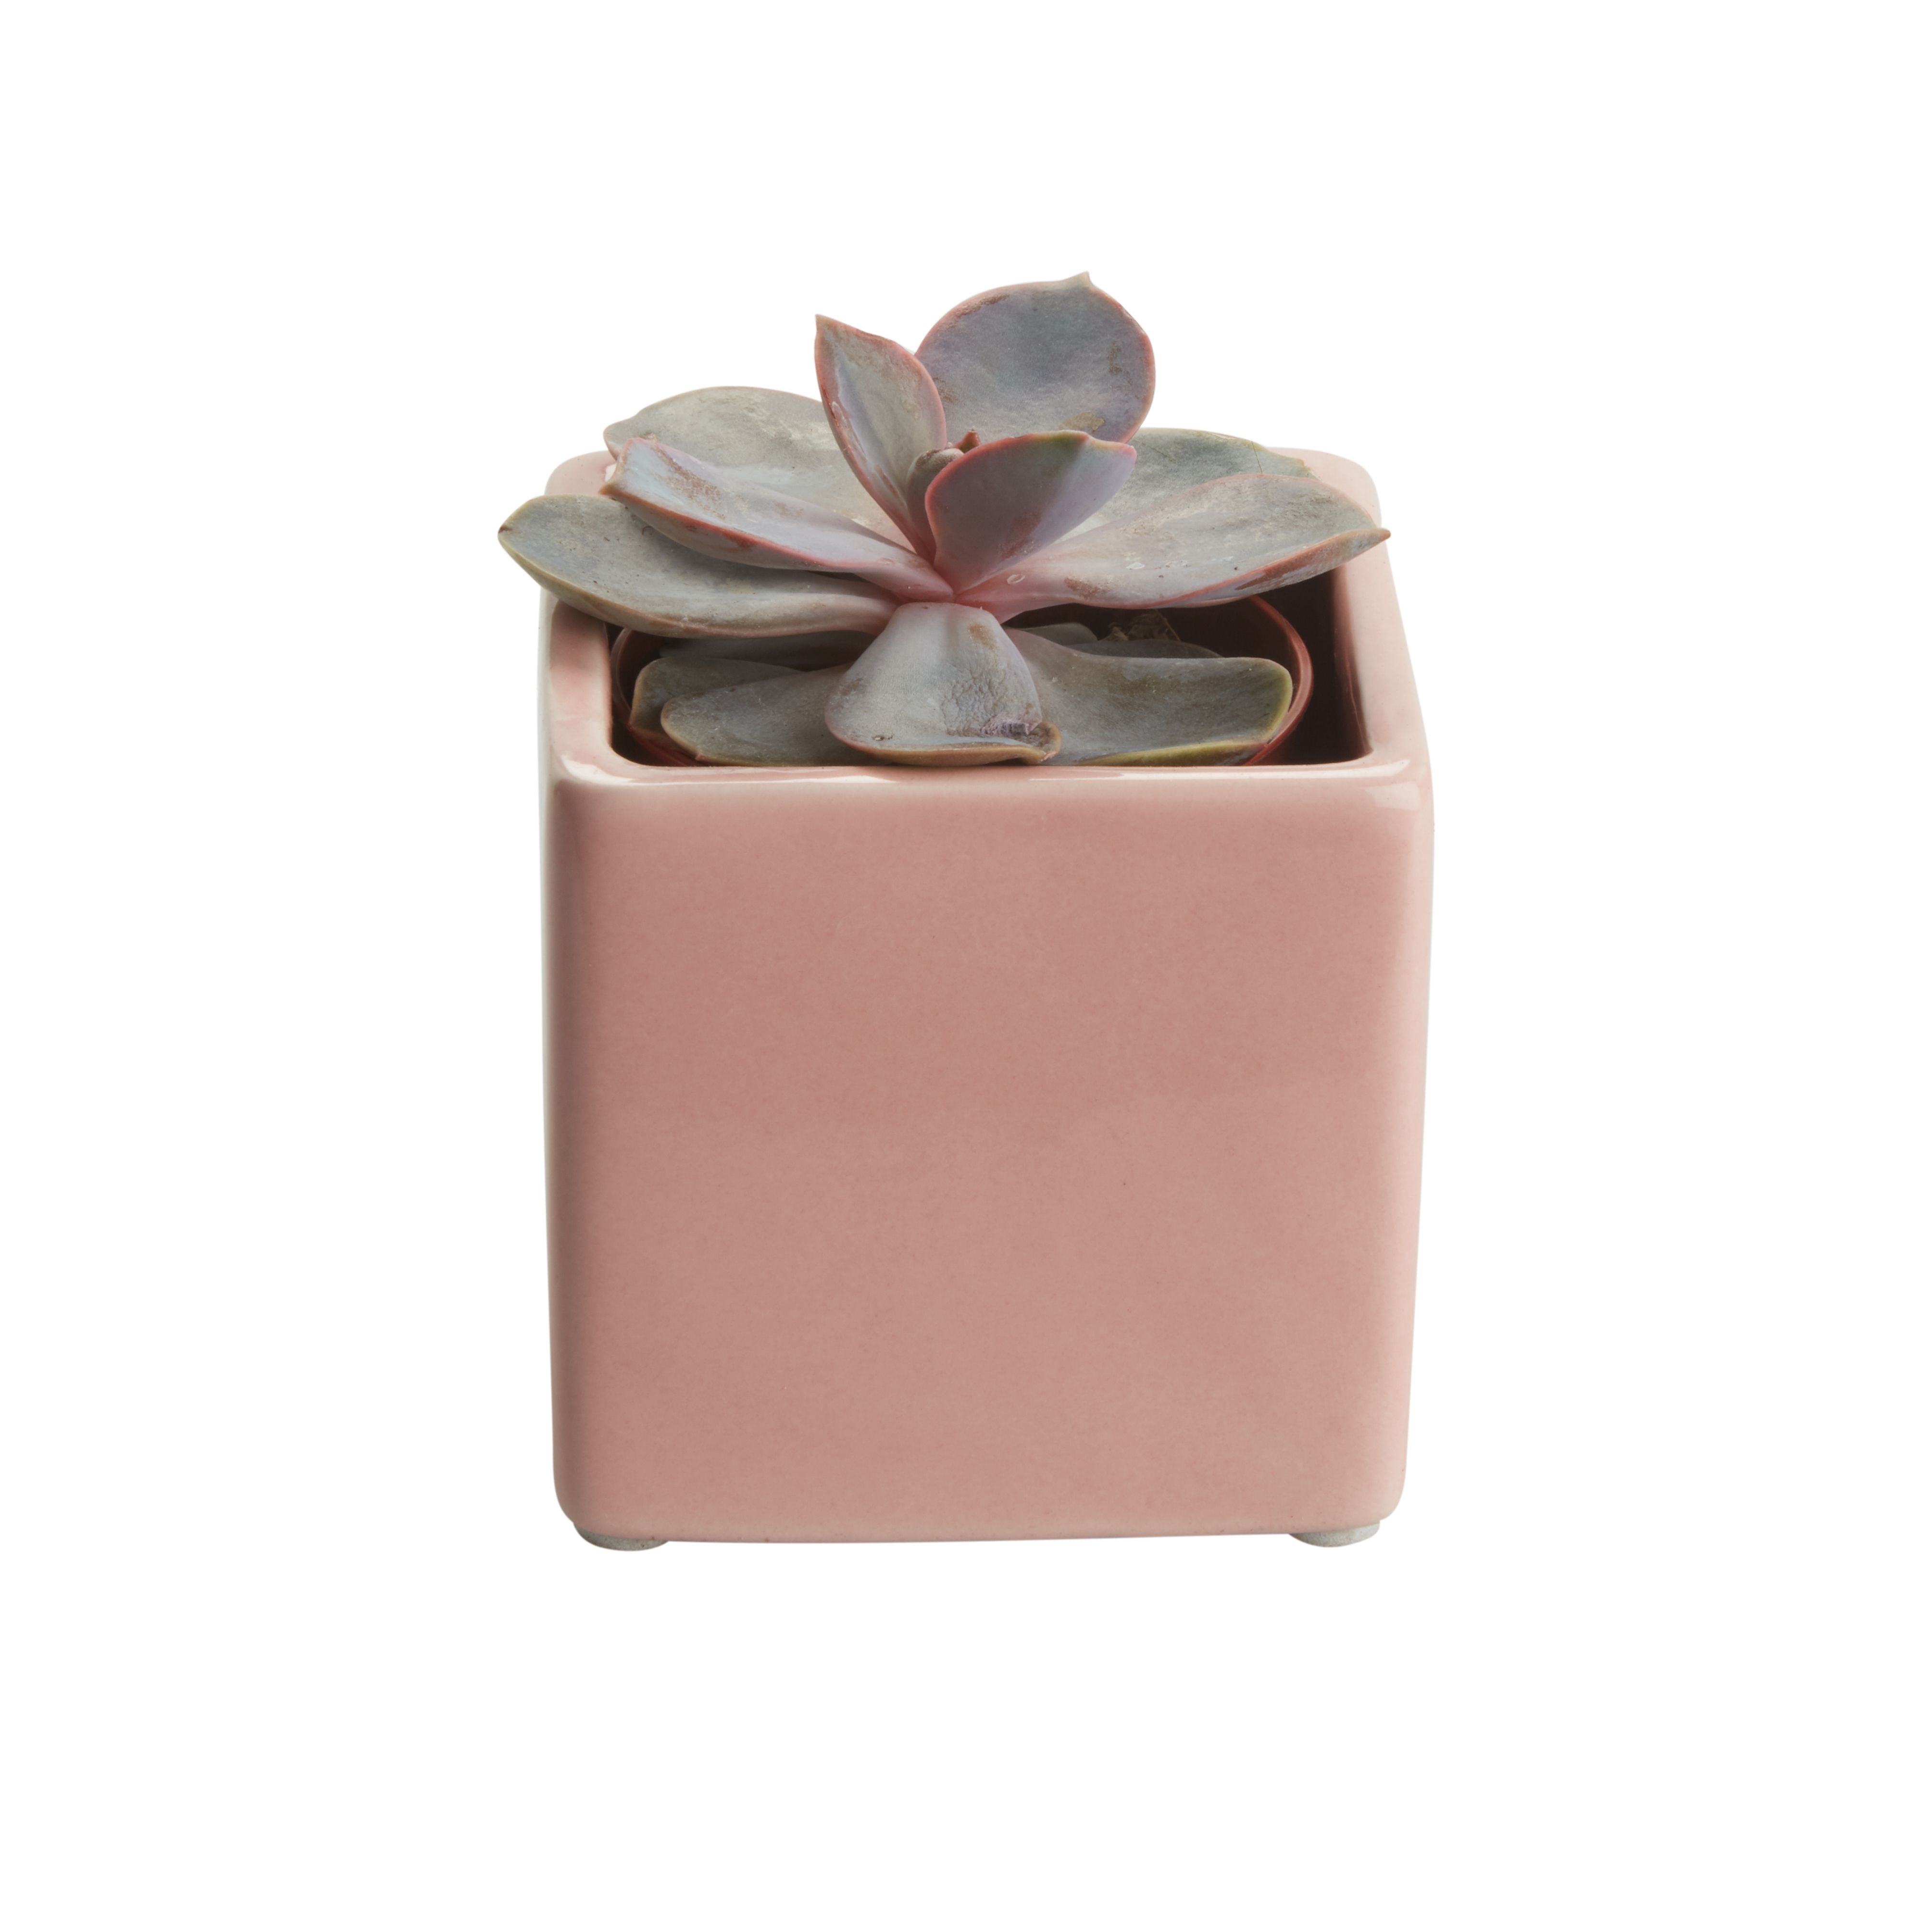 Succulent in 5.5cm Assorted Ceramic Decorative pot